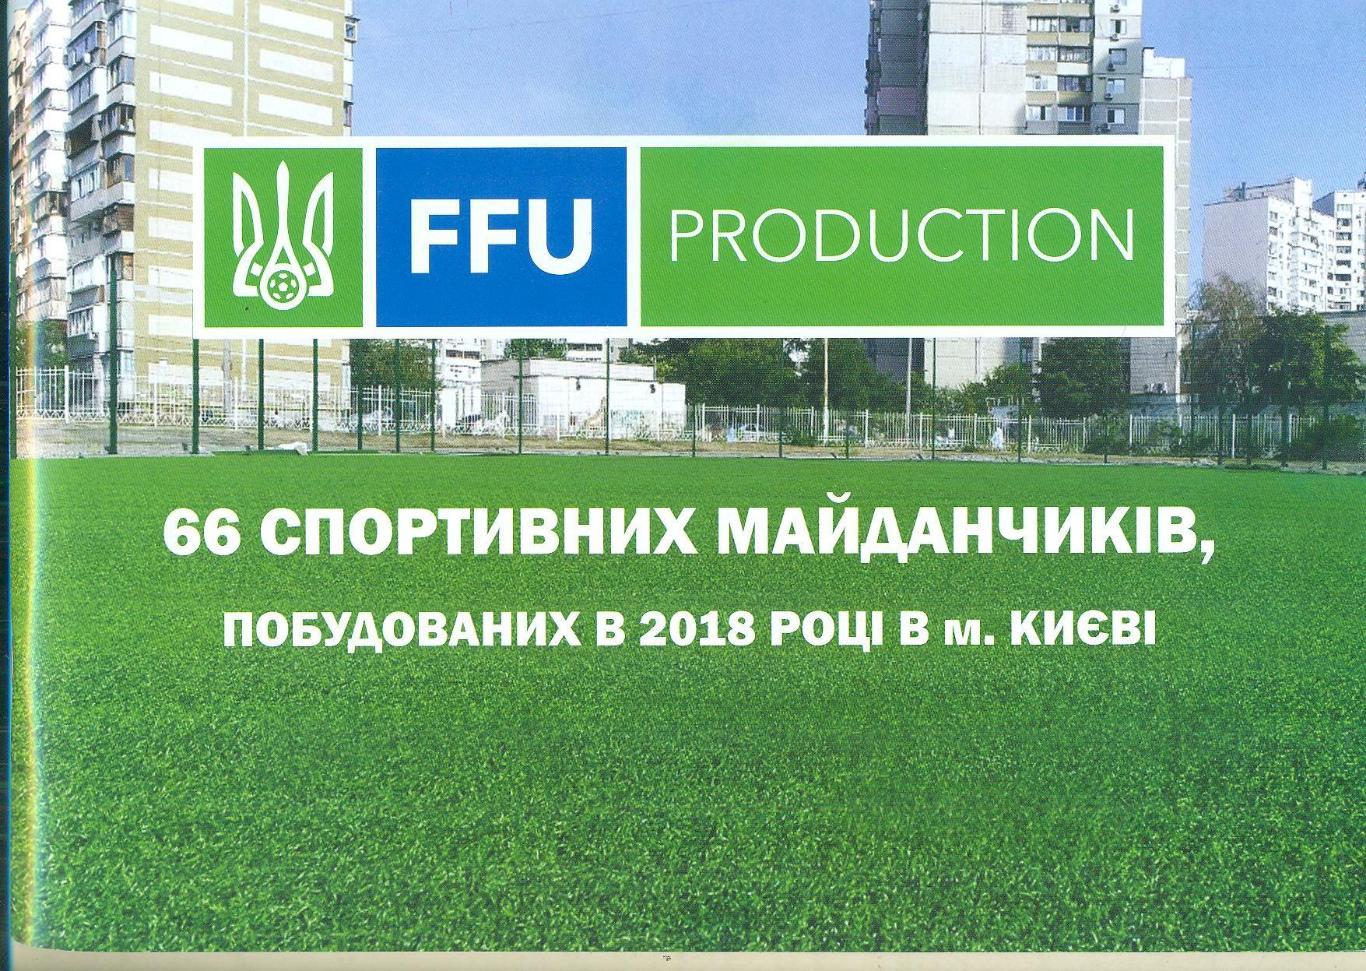 Федерация футбола,Украина,Киев-2018,справочник